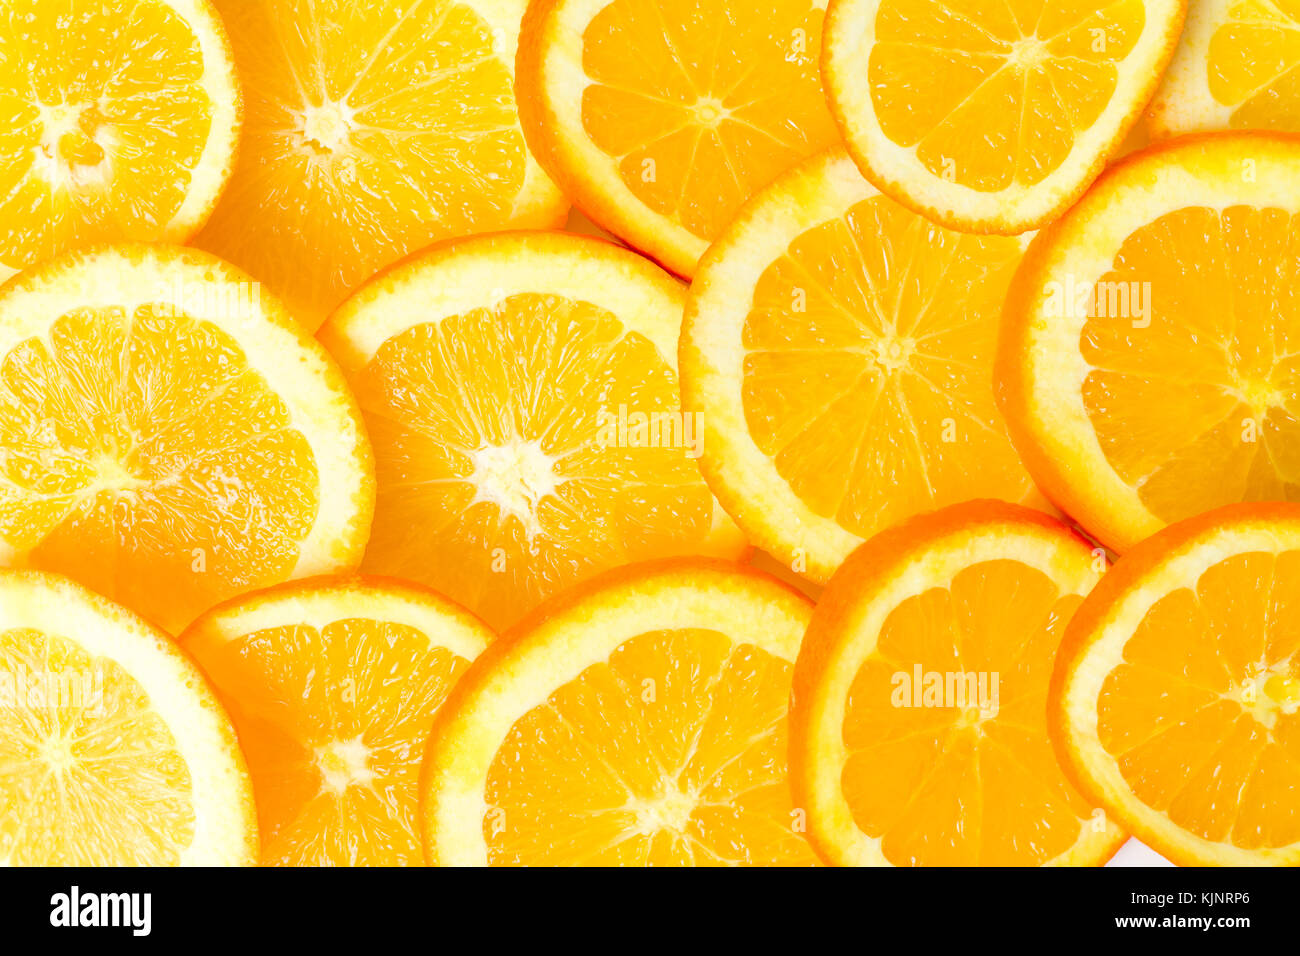 Tas de tranches de fruits orange sur un tas Banque D'Images